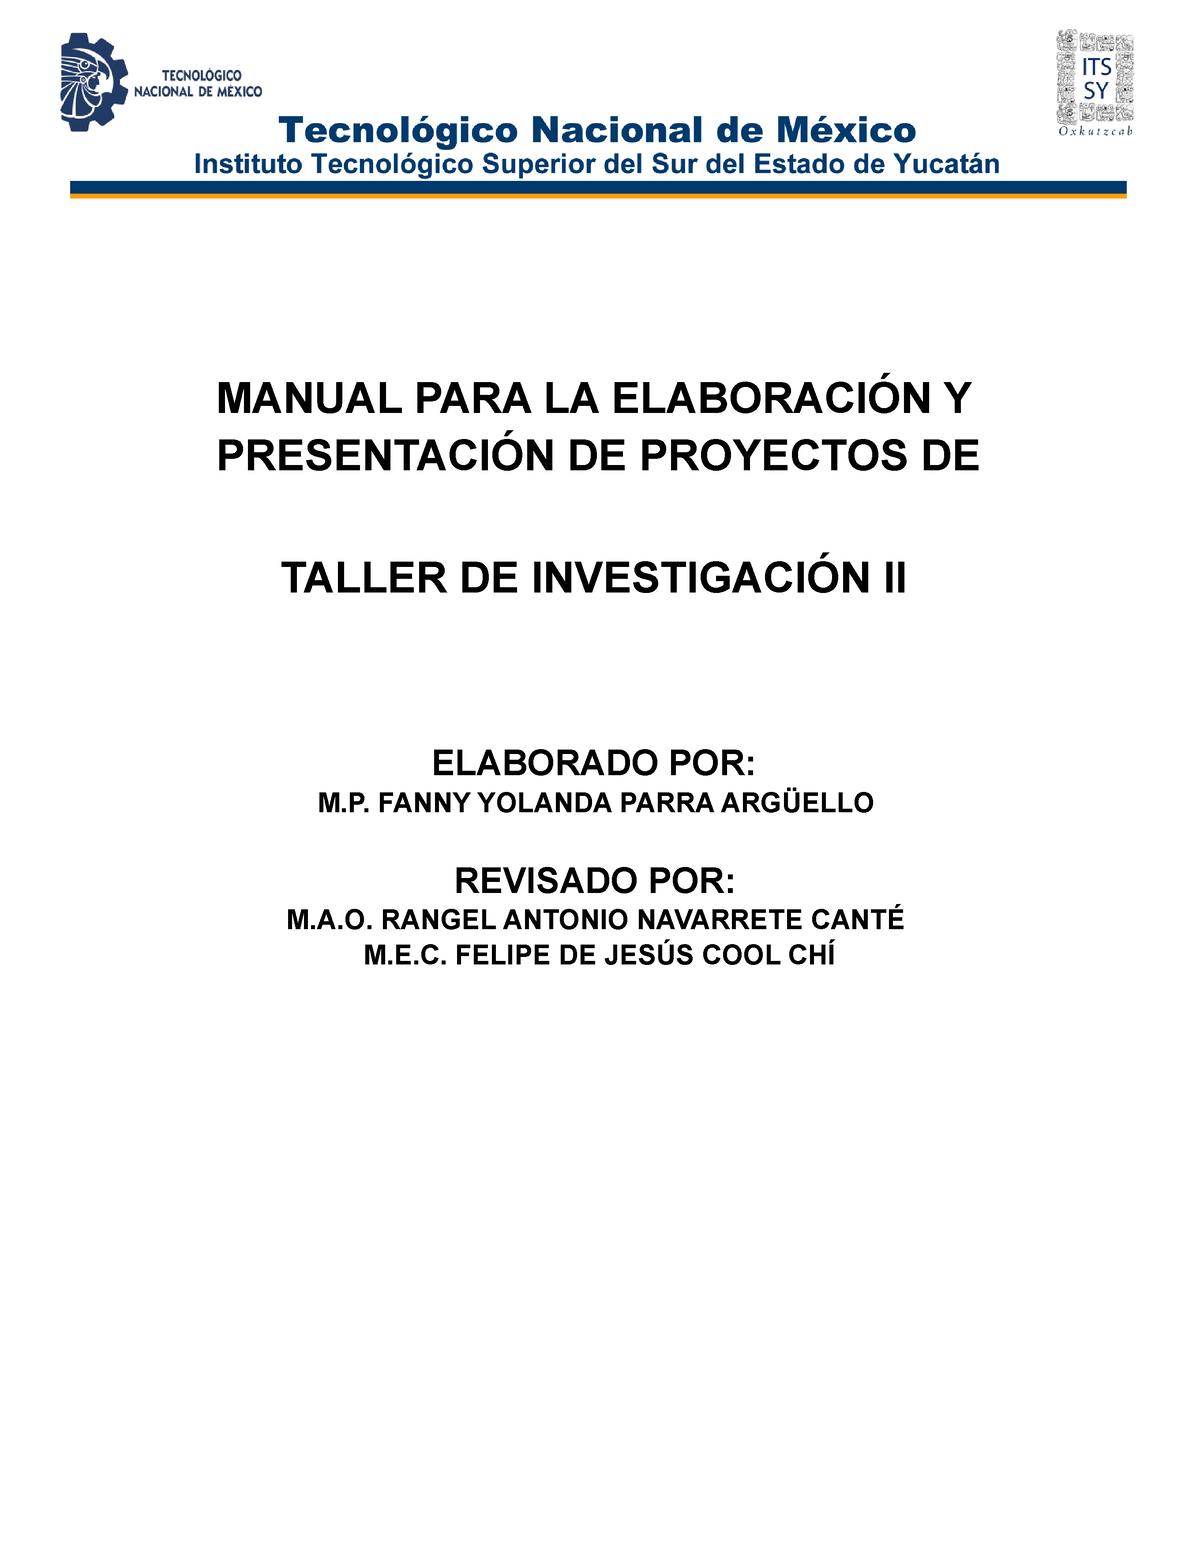 Manual Para La Elaboracion Y Presentacion De Proyectos De Taller De